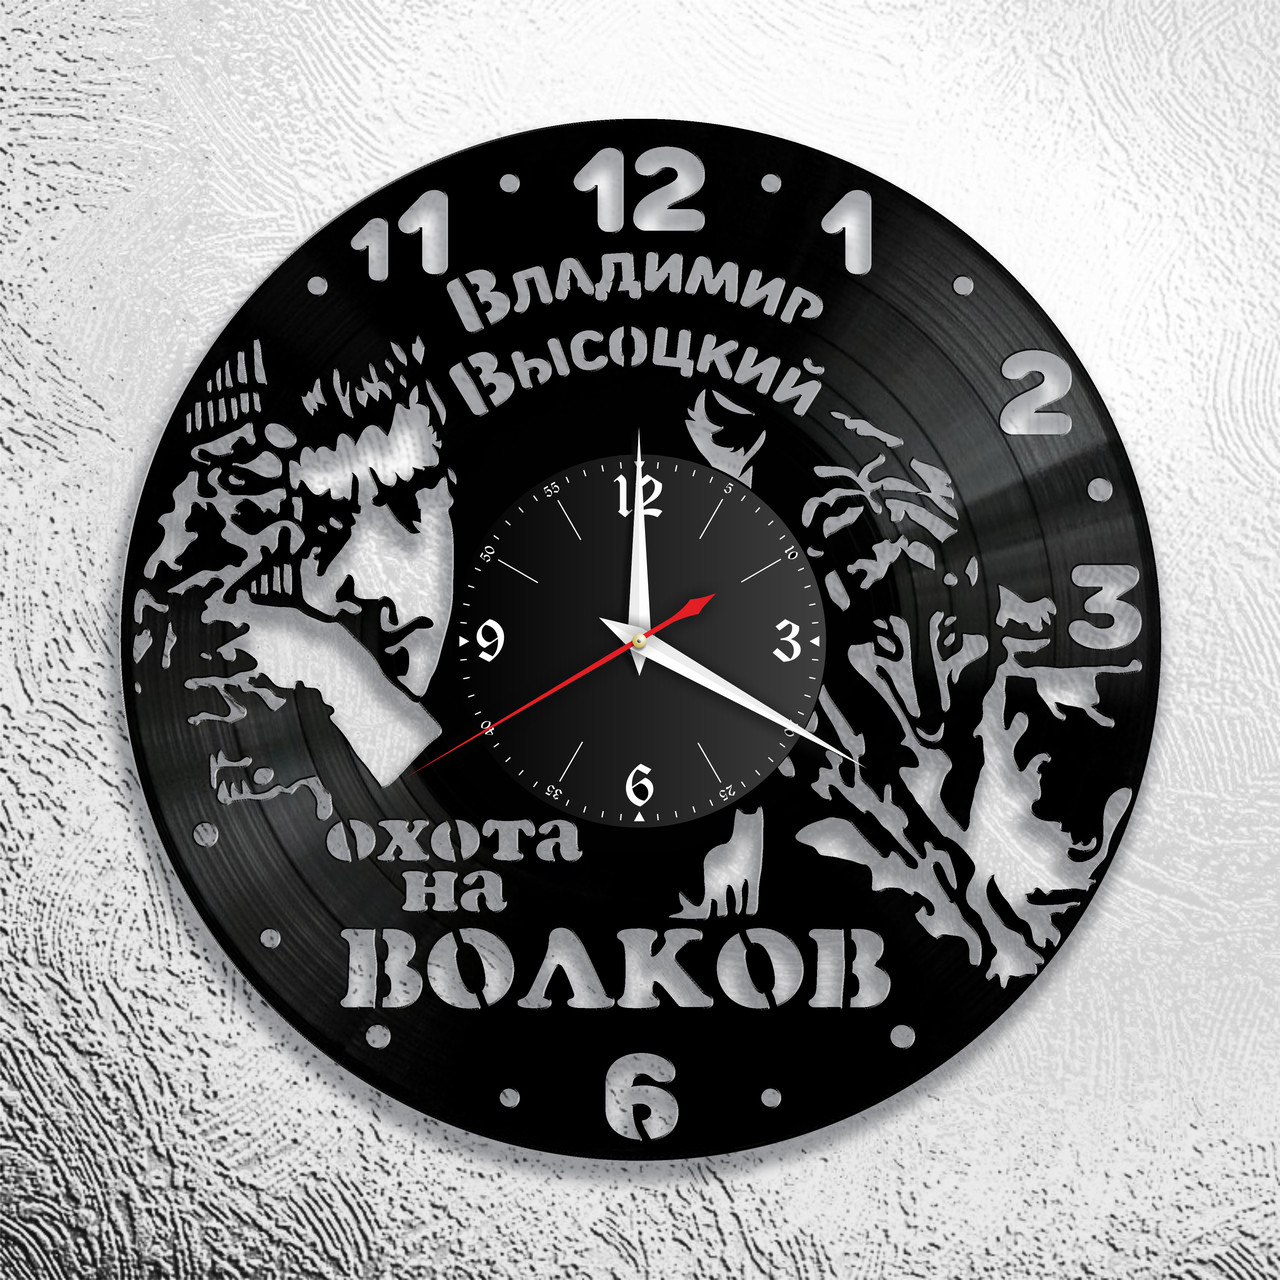 Оригинальные часы из виниловых пластинок "Высоцкий" версия 5, фото 1